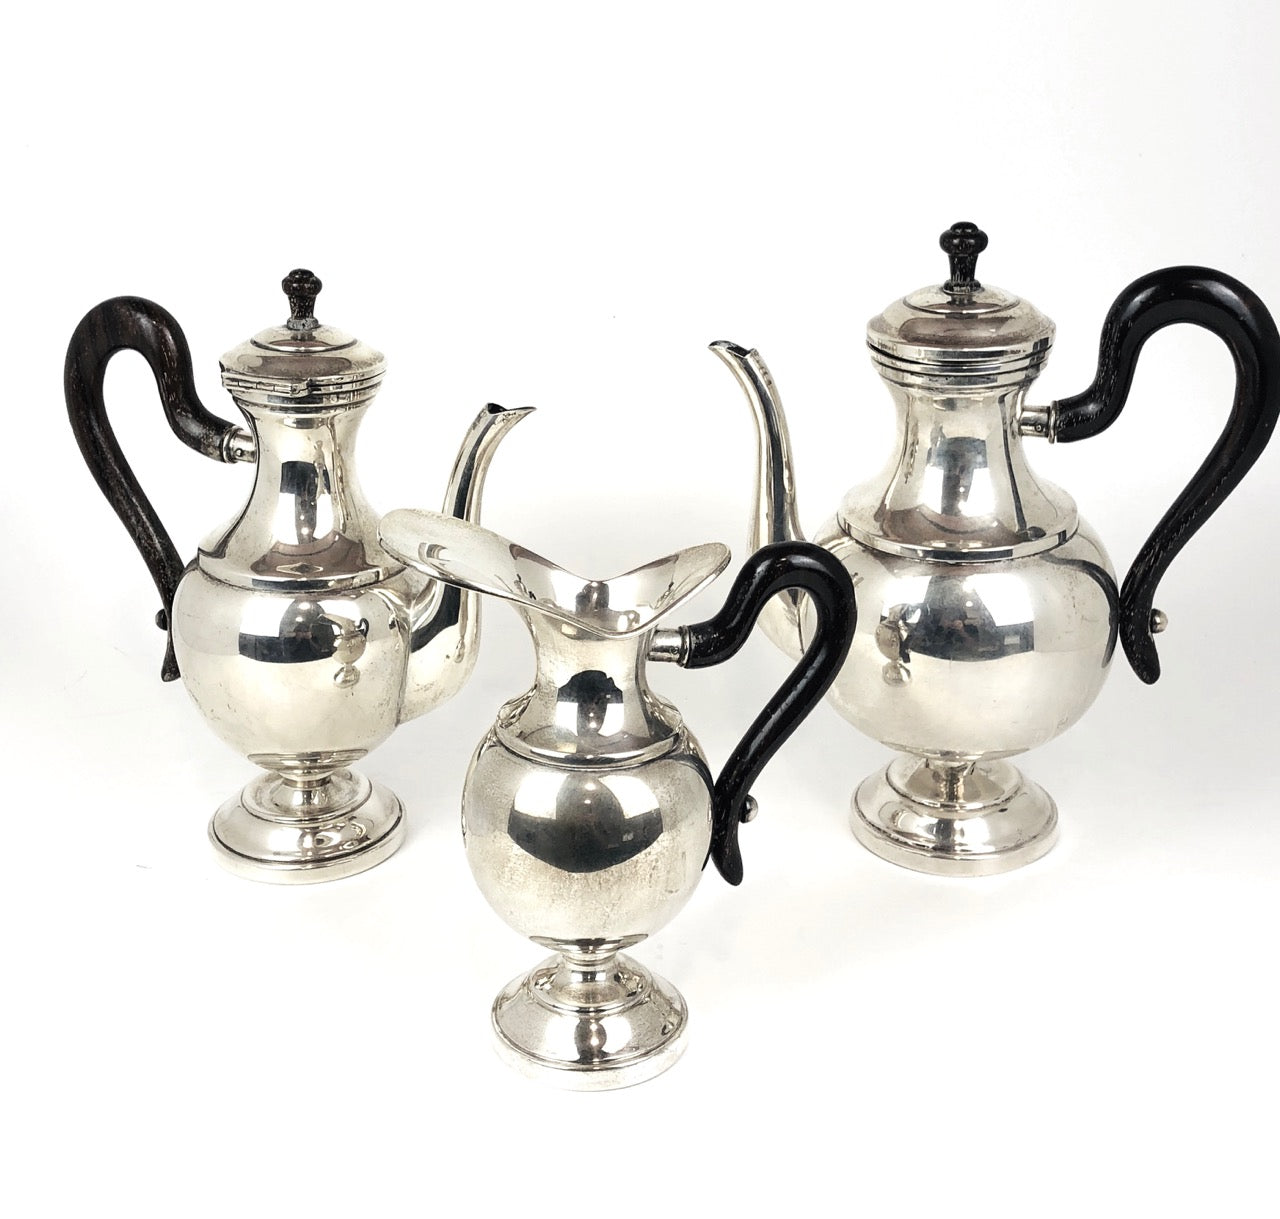 Tre pezzi in argento, teiera, caffettiera, lattiera, con manici in legno color nero.